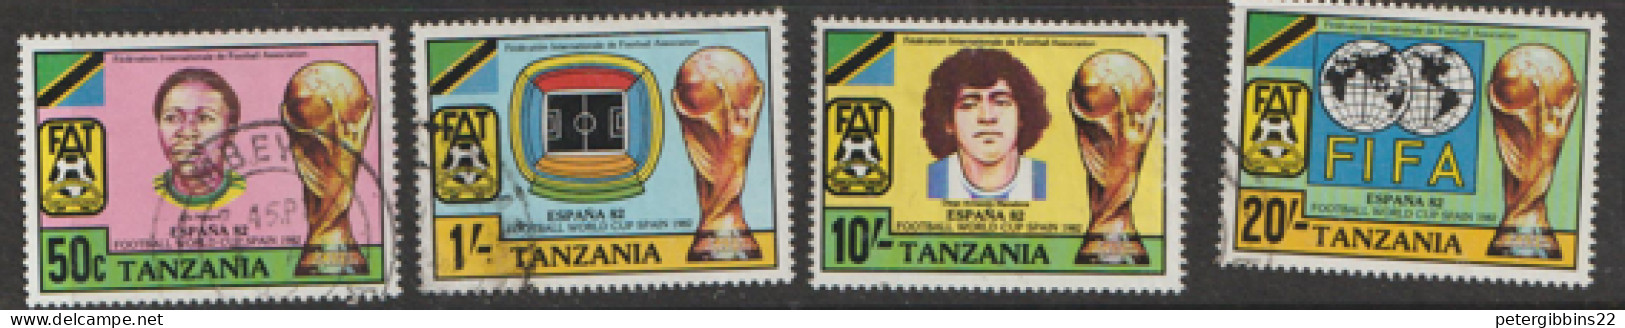 Tanzania   1982   SG 346-9  World Cup   Fine Used - Tanzania (1964-...)